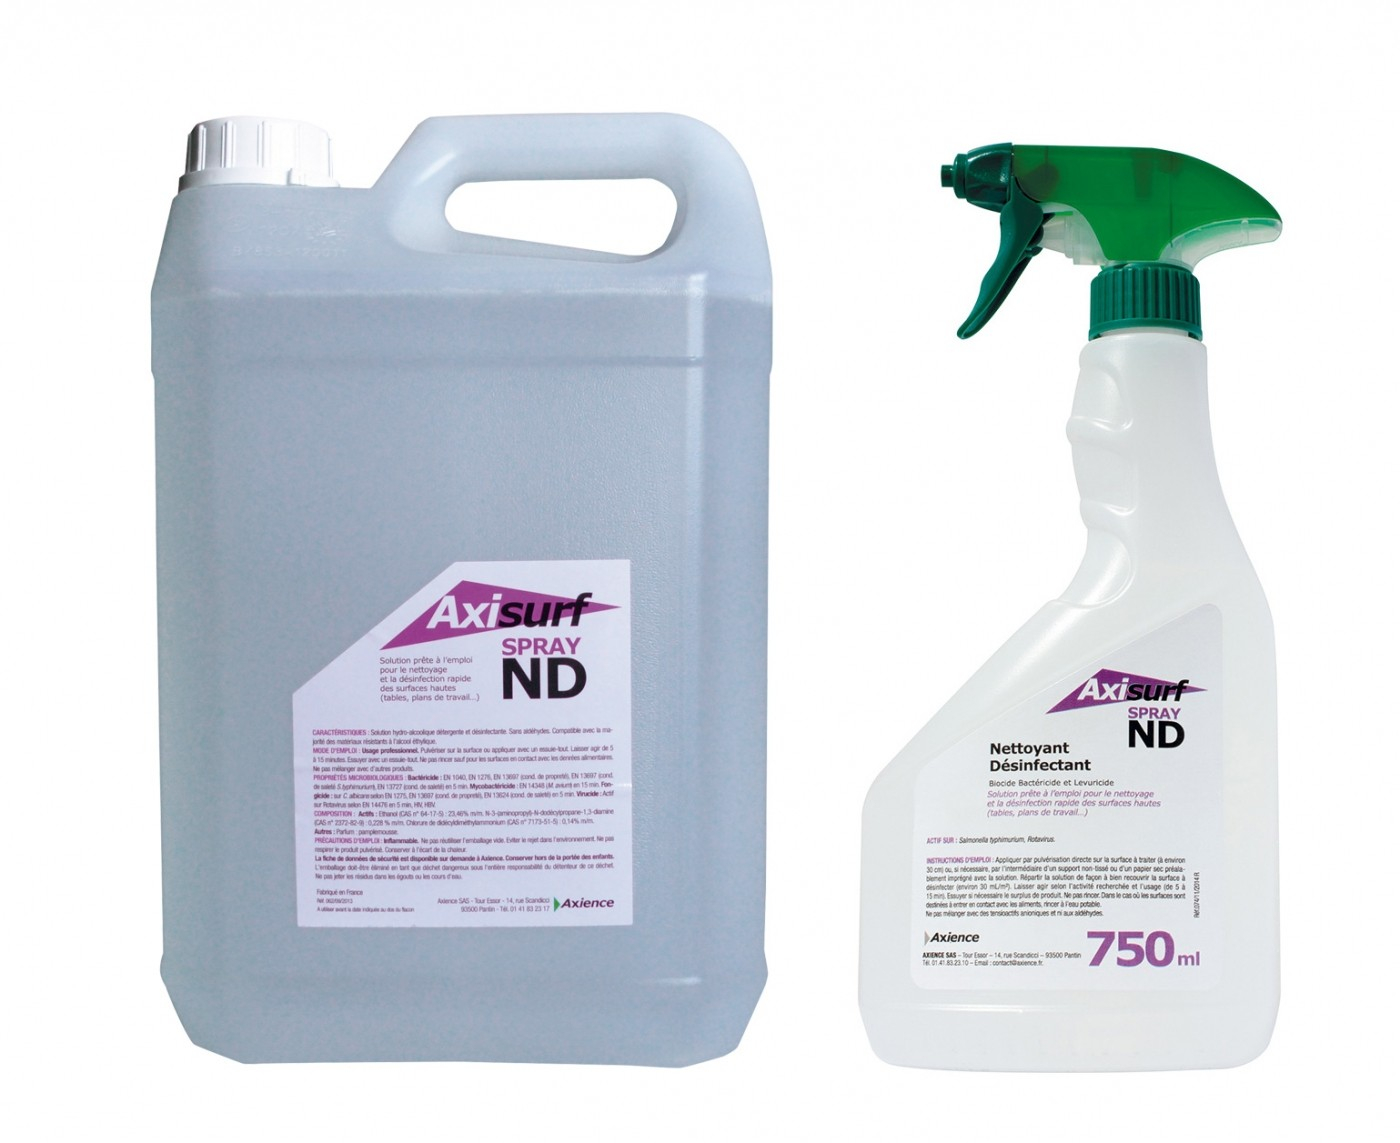 AXIENCE Axisurf ND Spray - Solução hidroalcoólica de limpeza e desinfecção